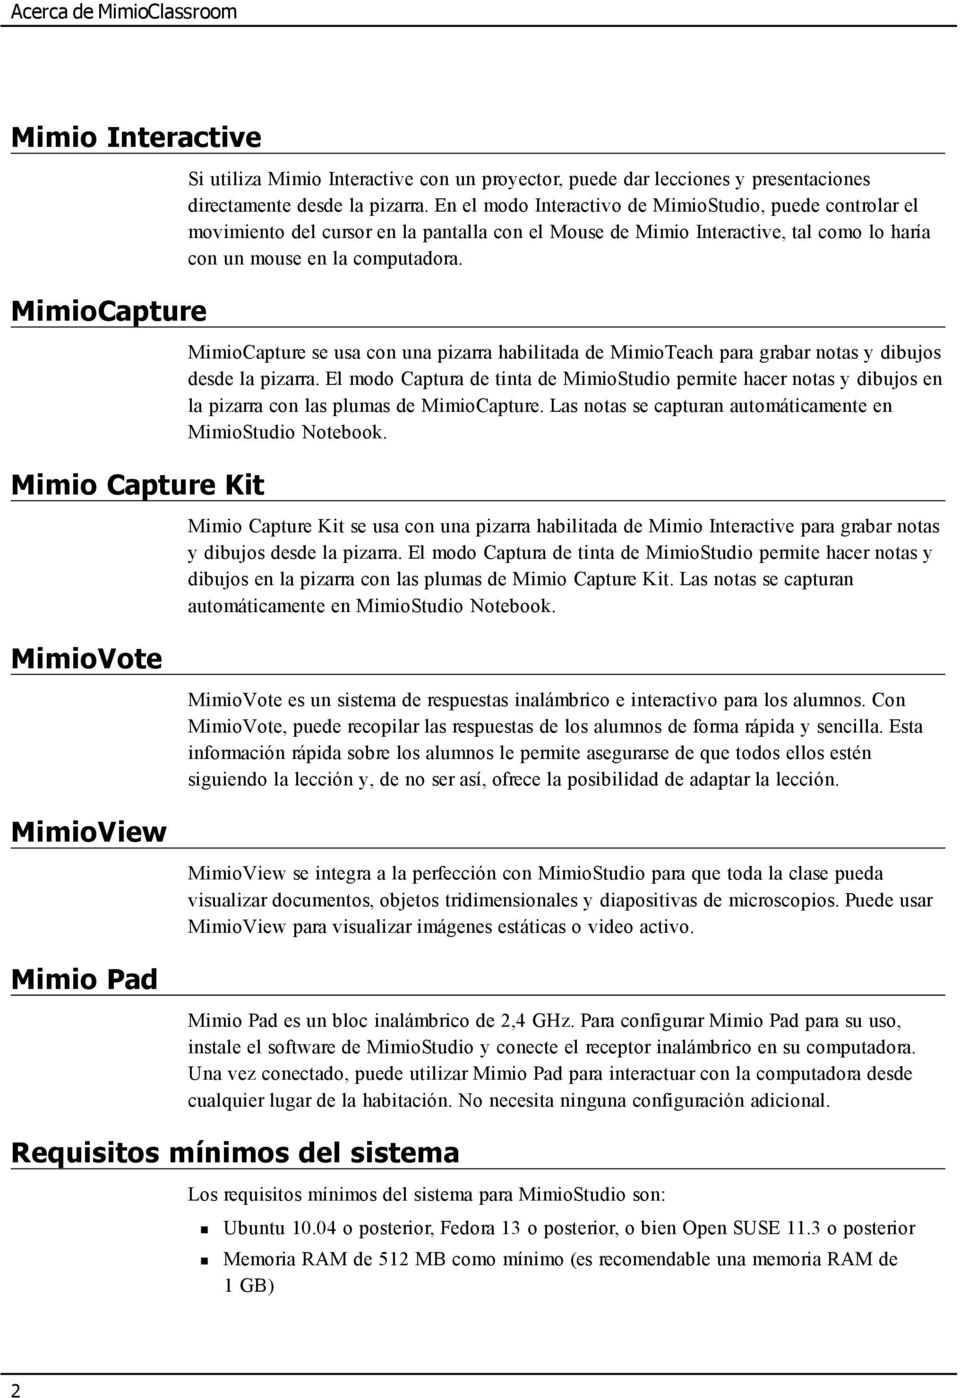 MimioCapture se usa con una pizarra habilitada de MimioTeach para grabar notas y dibujos desde la pizarra.